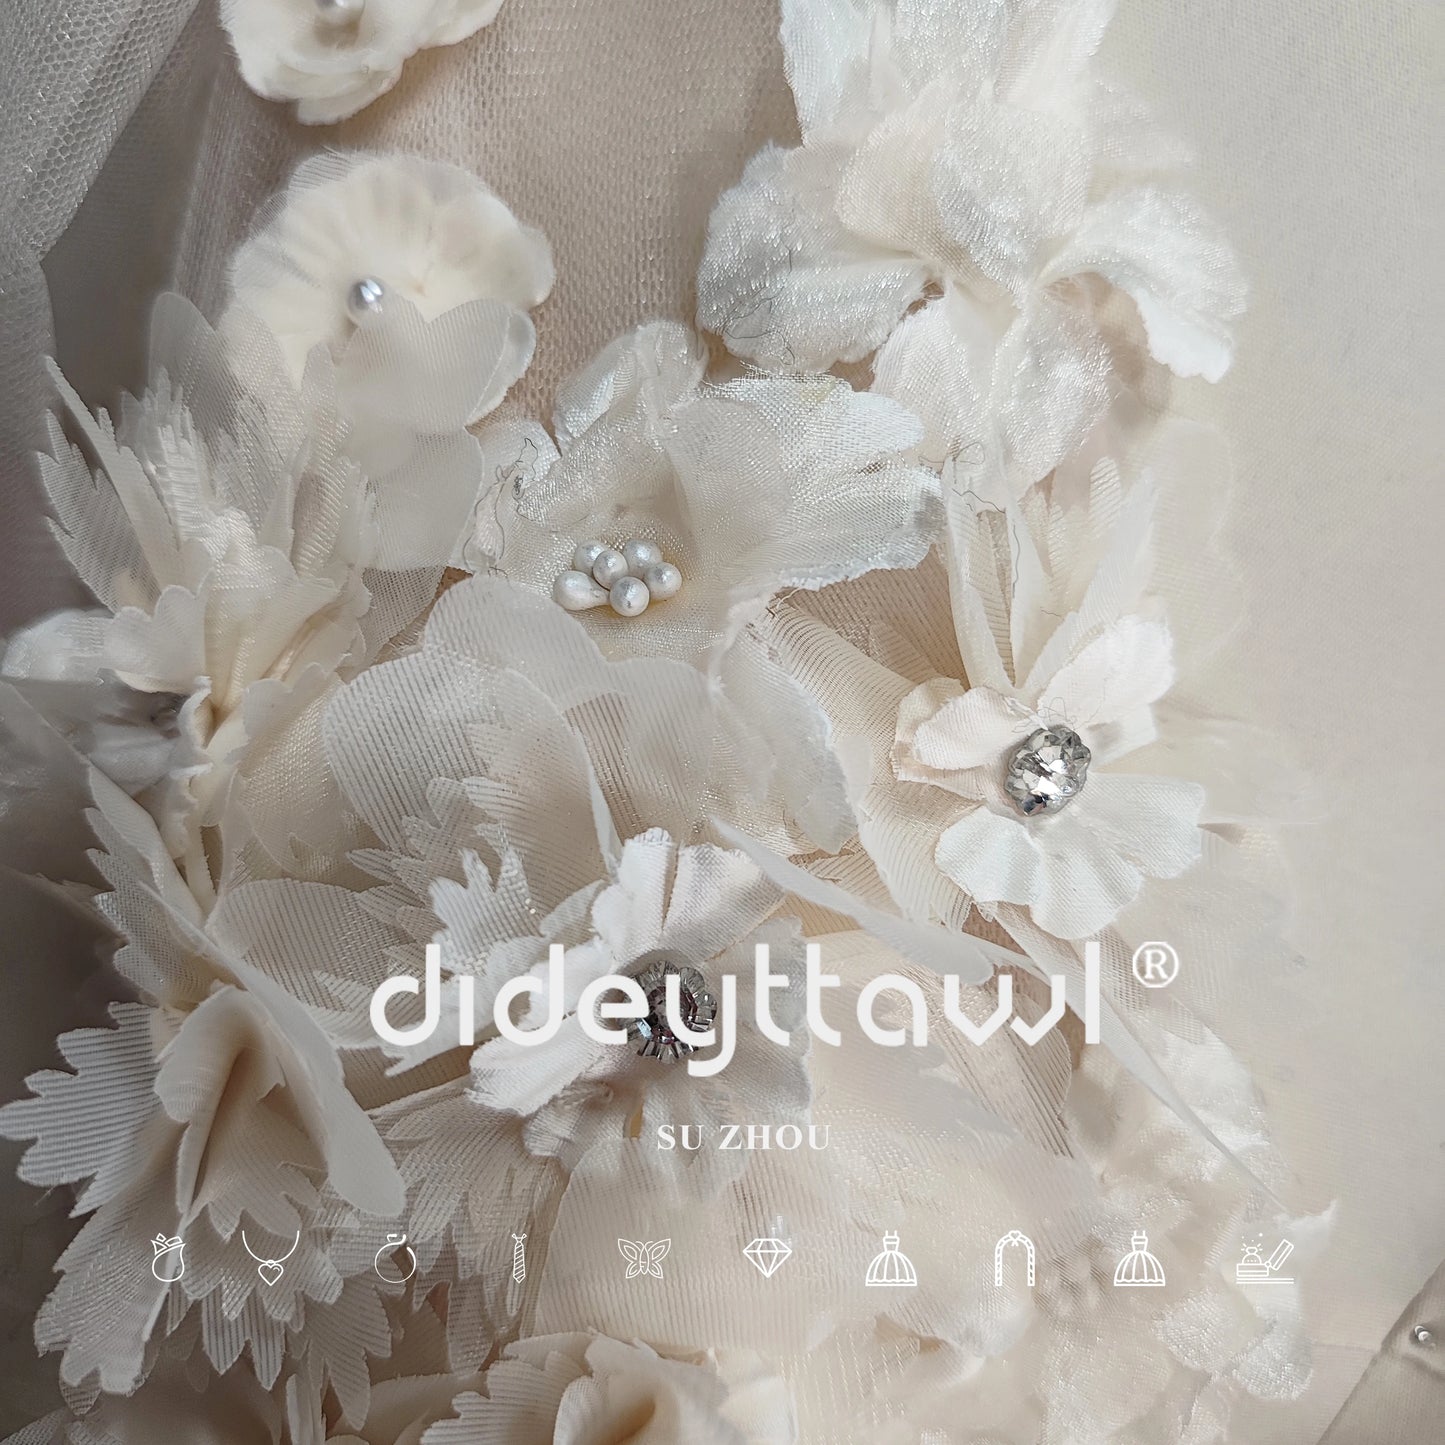 Dideyttawl VERO foto di fiori 3d maniche a soffio abito da sposa corto perle profonde a v manico in tulle senza schienale mini abito da sposa